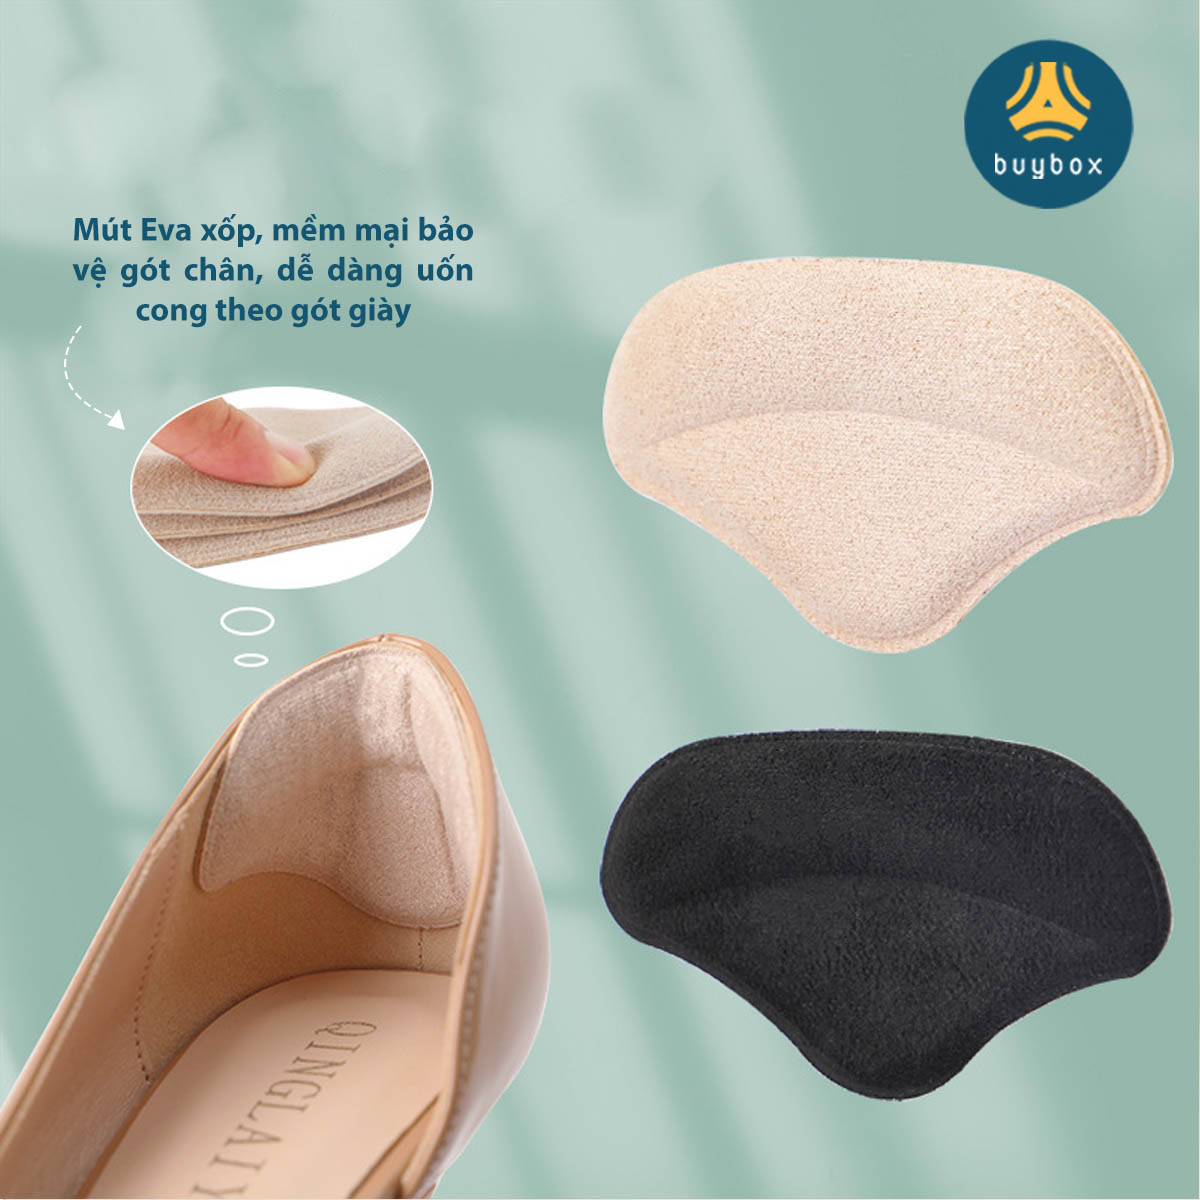 Lót giày cao gót chống trầy, giảm size, chống tuột gót chất liệu EVA ép mặt nhung - Buybox - BBPK279